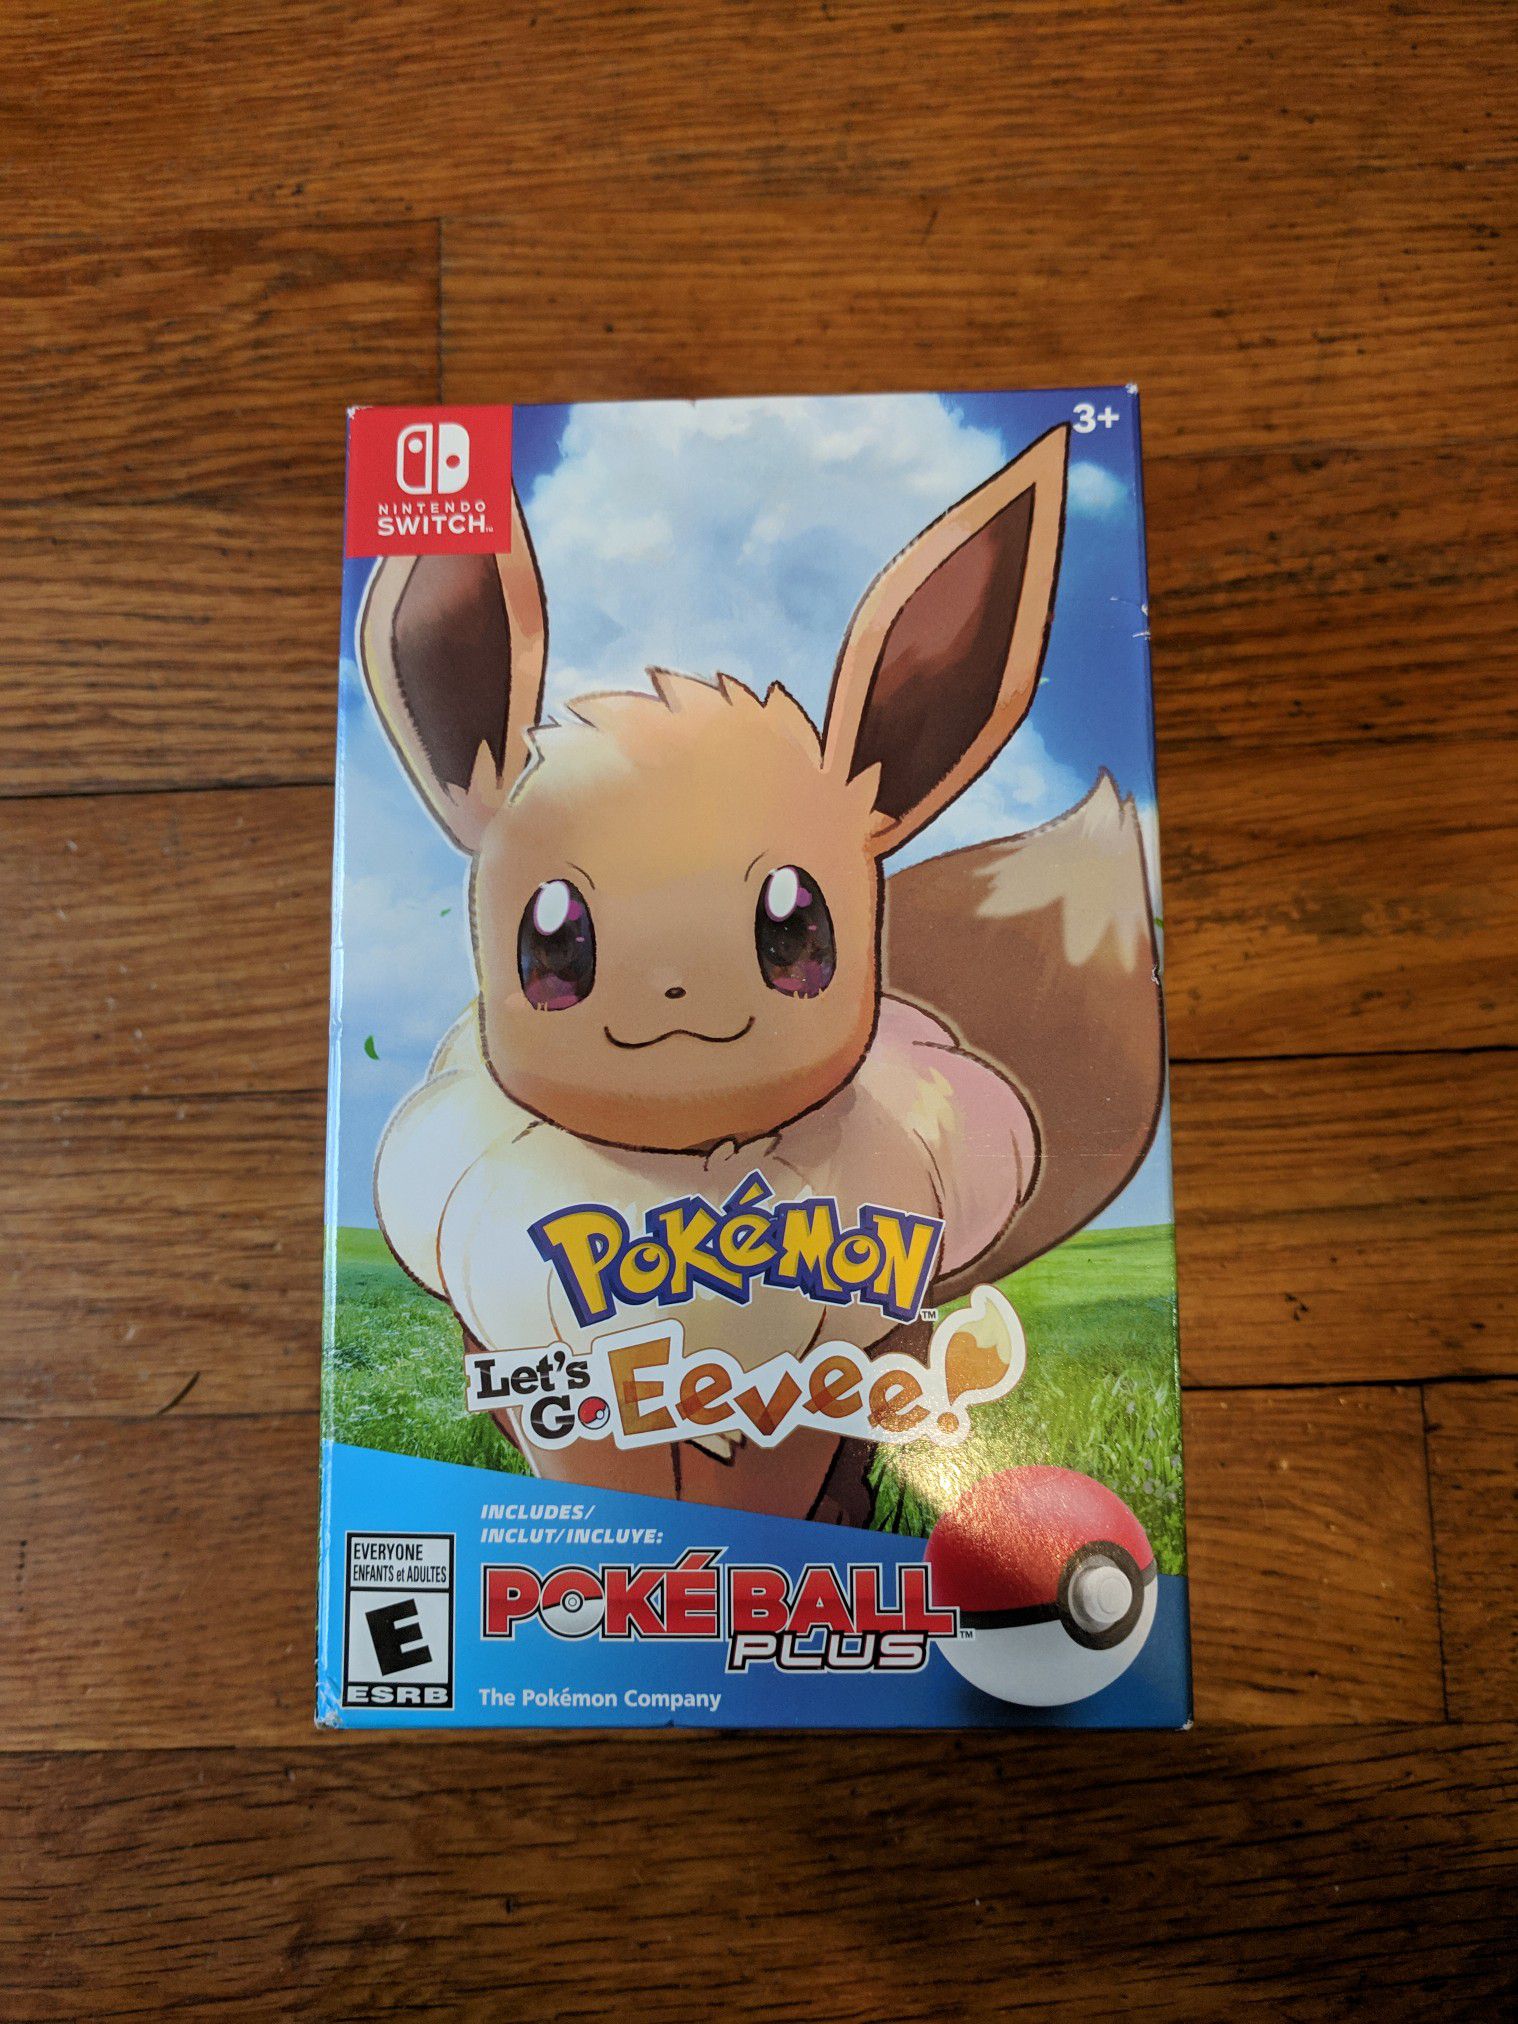 NEW: Pokemon: Let's Go Eevee! Poke Ball Plus Bundle - Nintendo Switch